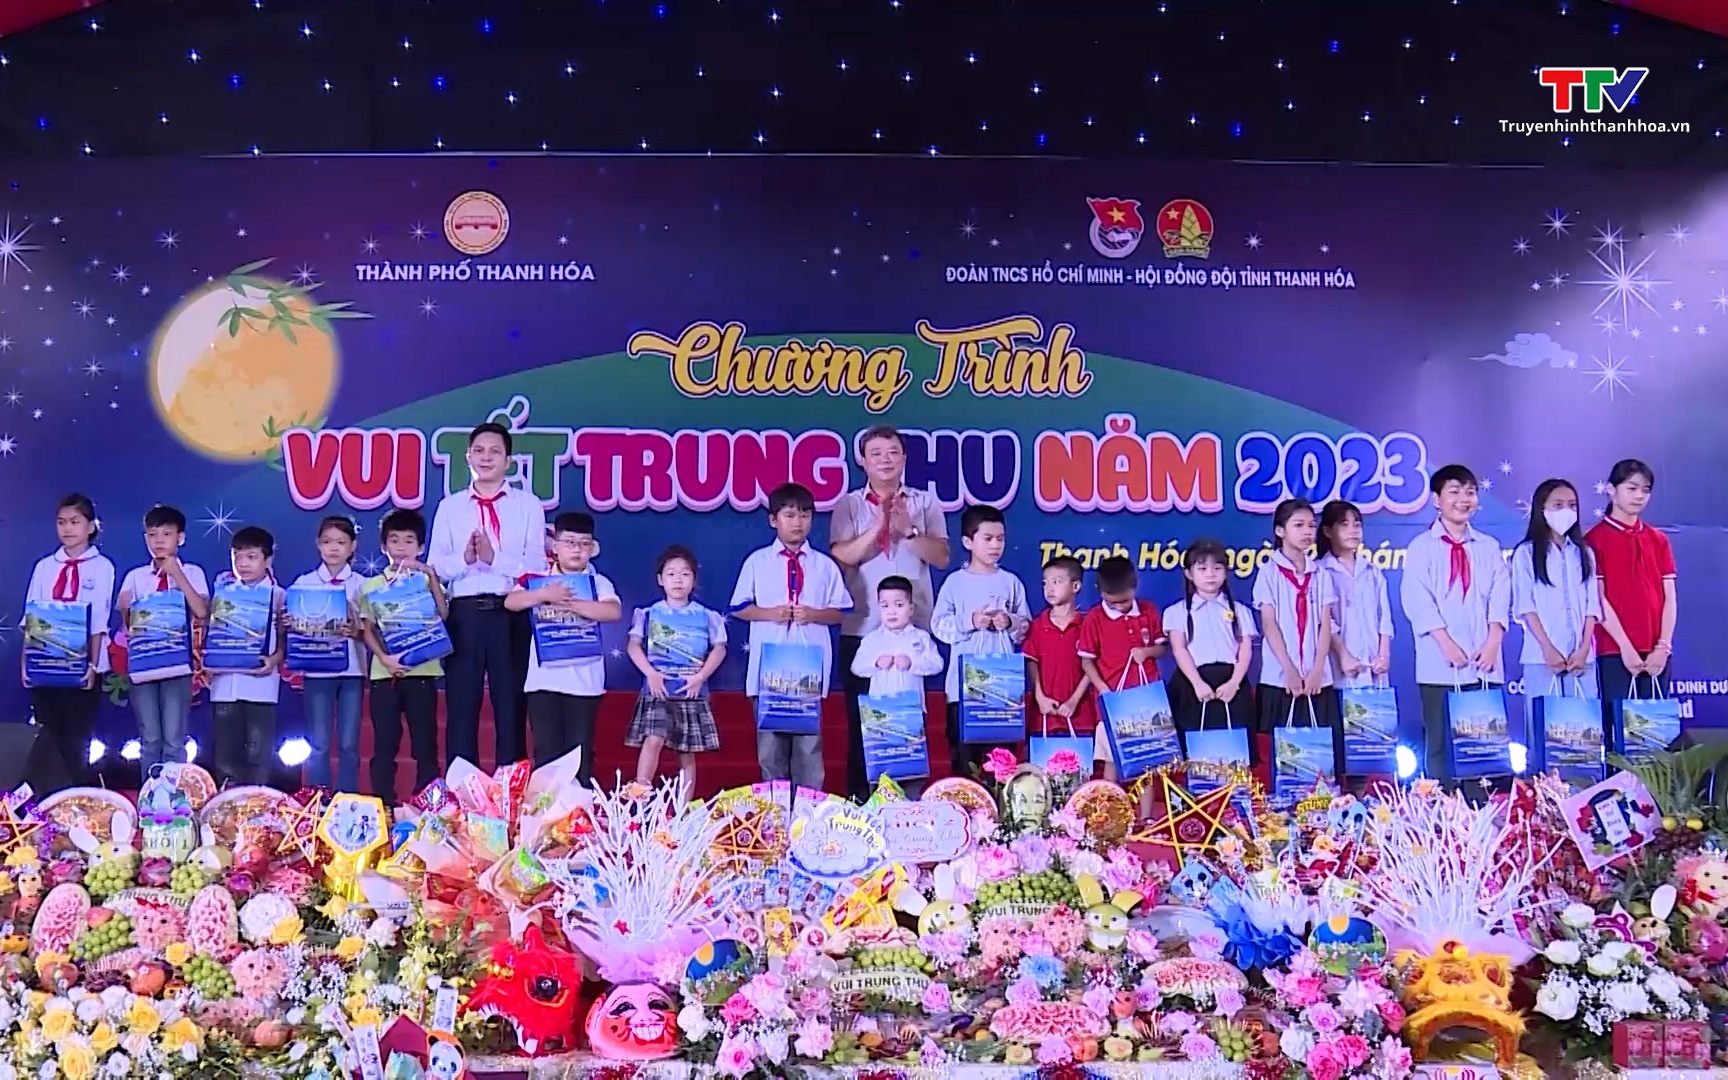 Thành phố Thanh Hoá tổ chức chương trình “Vui Tết Trung thu” năm 2023